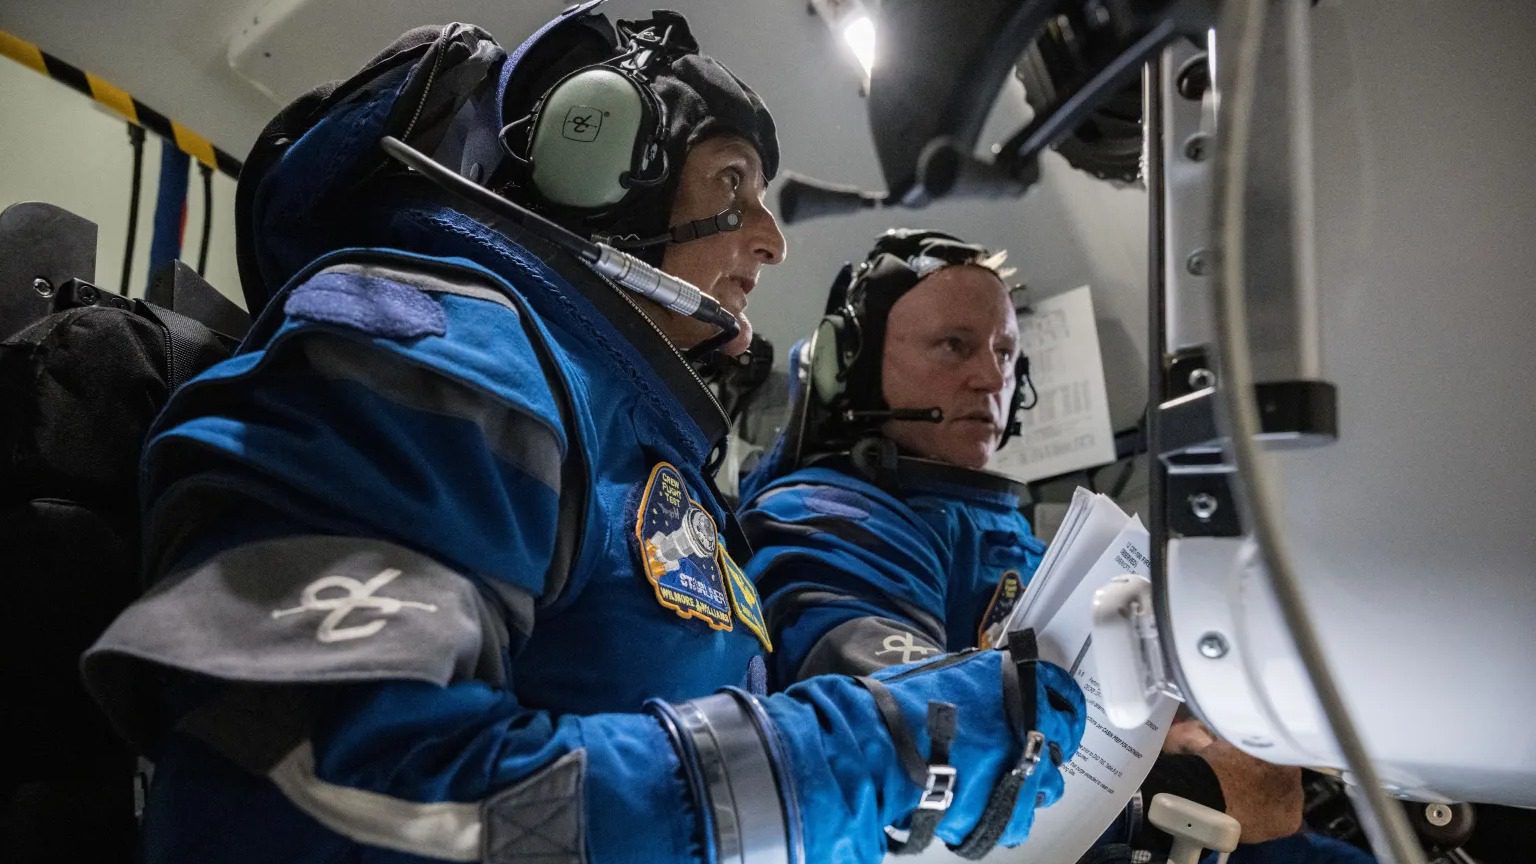 Dos astronautas con trajes espaciales miran pantallas en un simulador